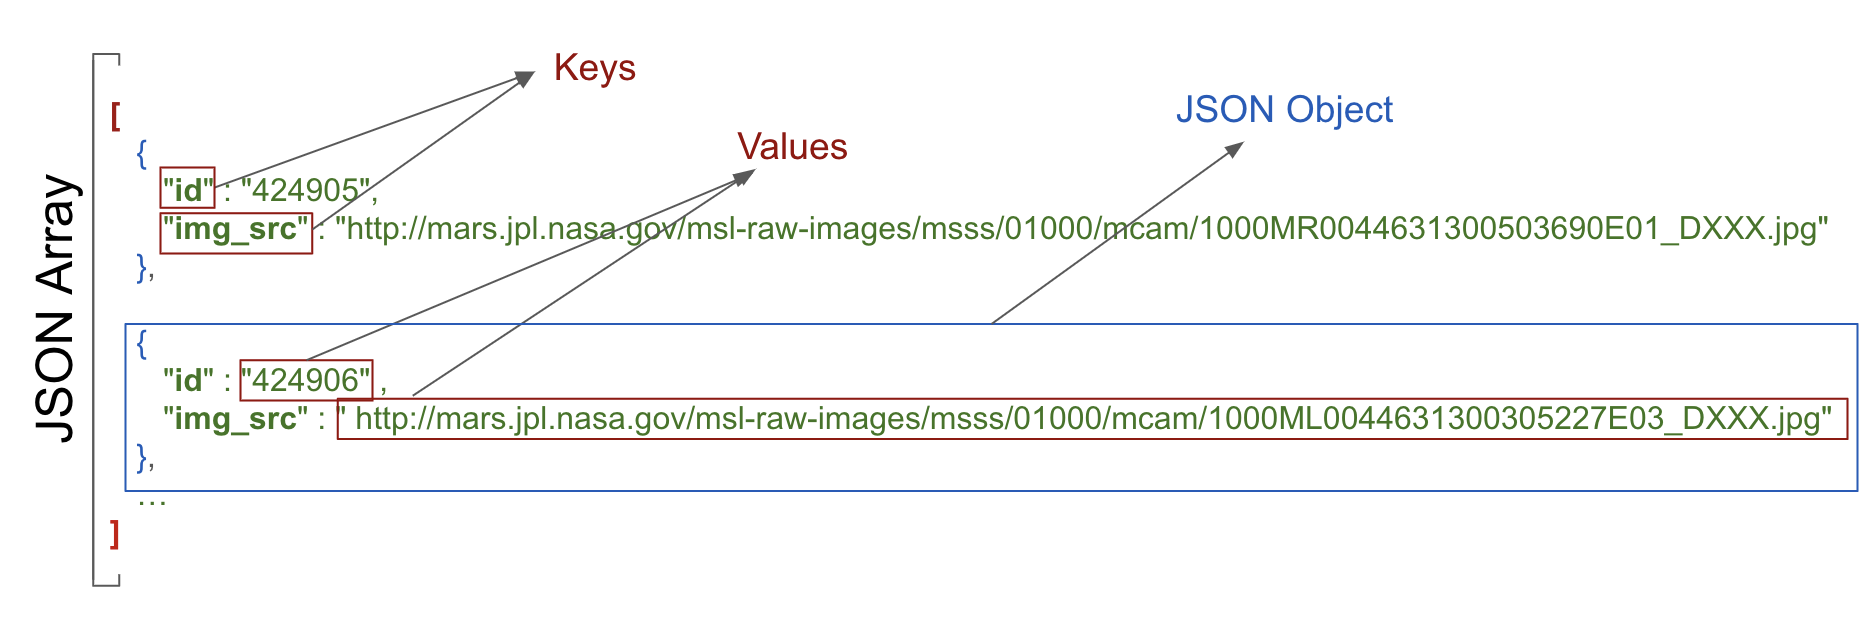 hiển thị các giá trị khoá và đối tượng JSON